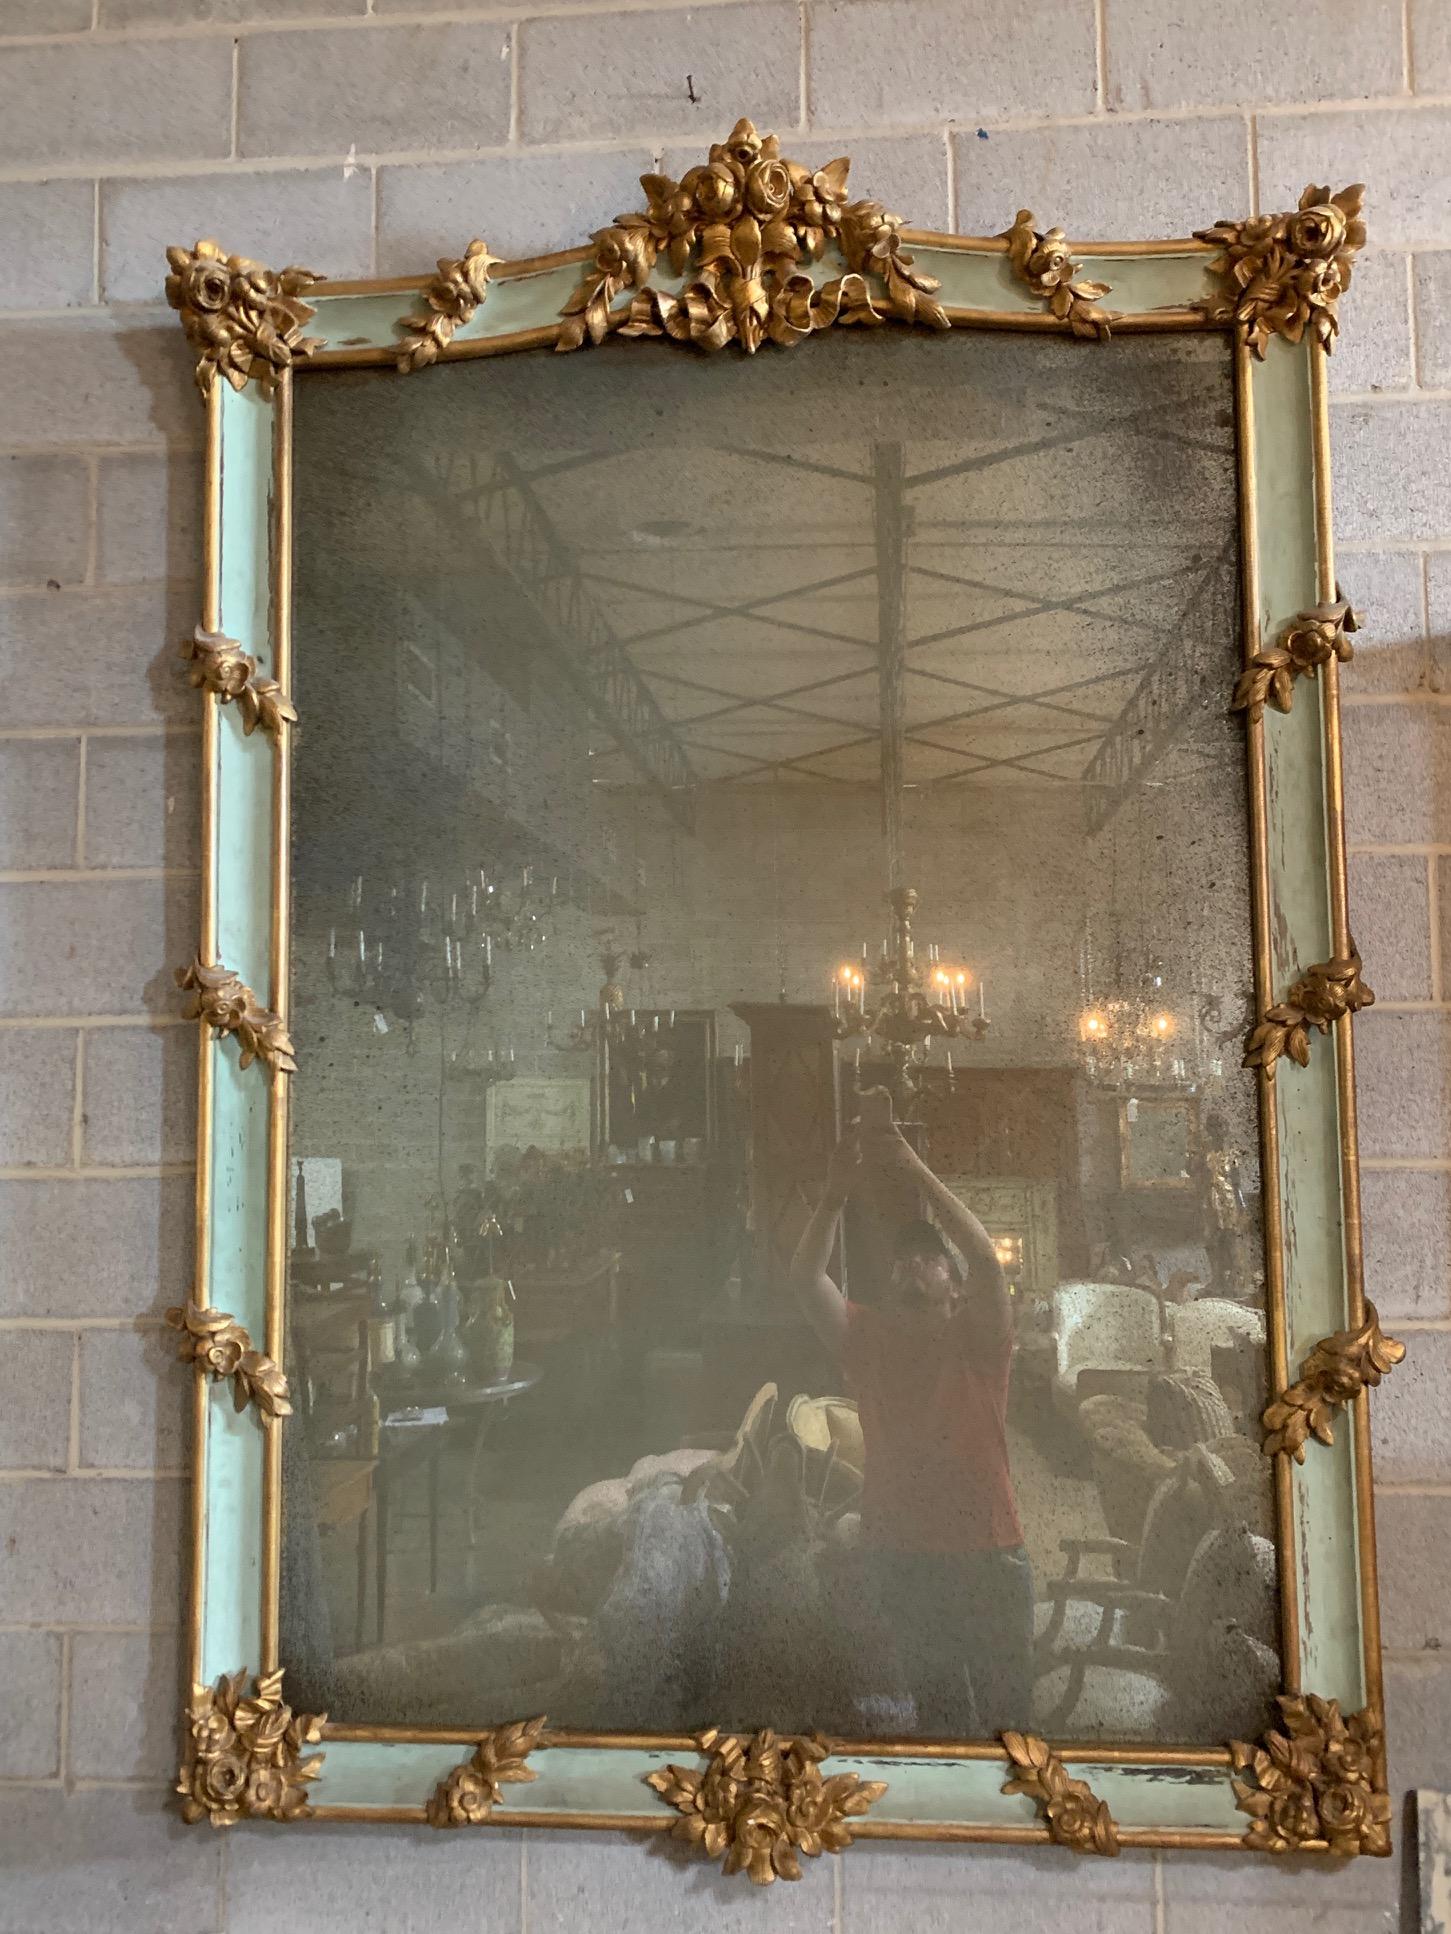 Un miroir français du 19ème siècle peint et doré à la feuille avec de beaux éléments est réalisé en bois sculpté et doré.

Le style est Napoléon III, le cadre est du 19ème siècle avec un miroir vieilli plus récent. Le cadre en bois sculpté est